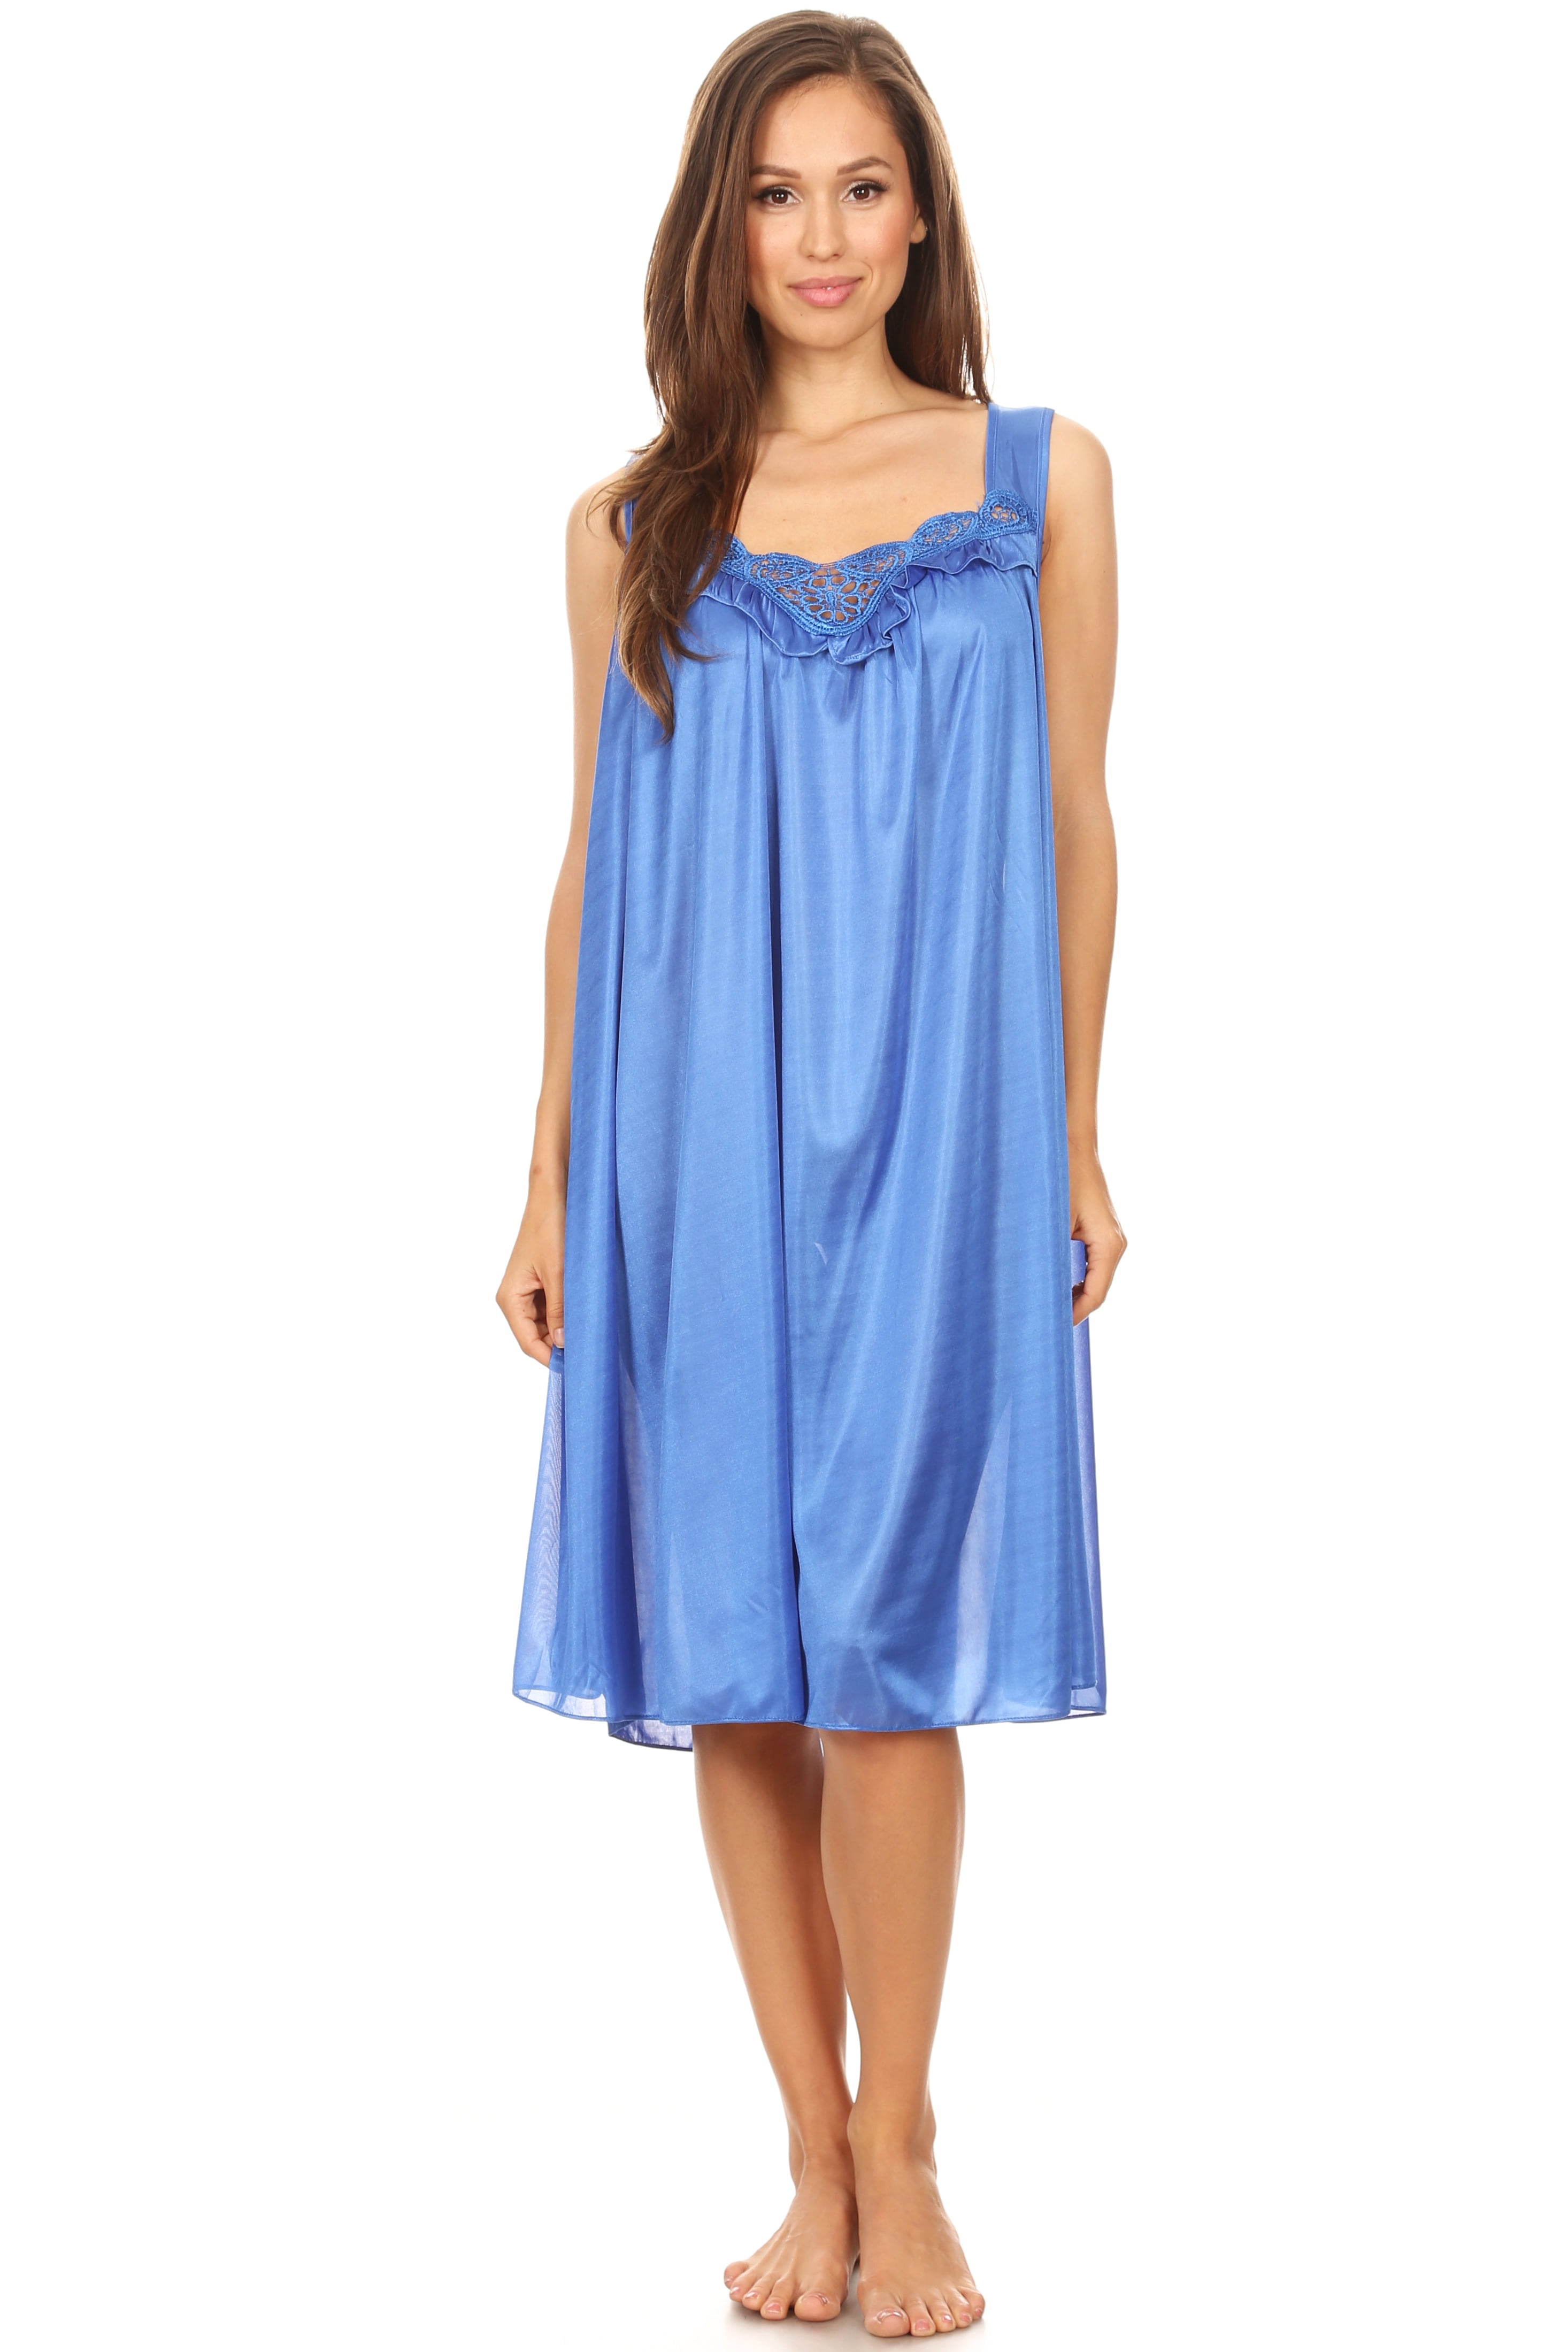 Lati Fashion Women Nightgown Sleepwear Female Sleep Dress Nightshirt Royal L 